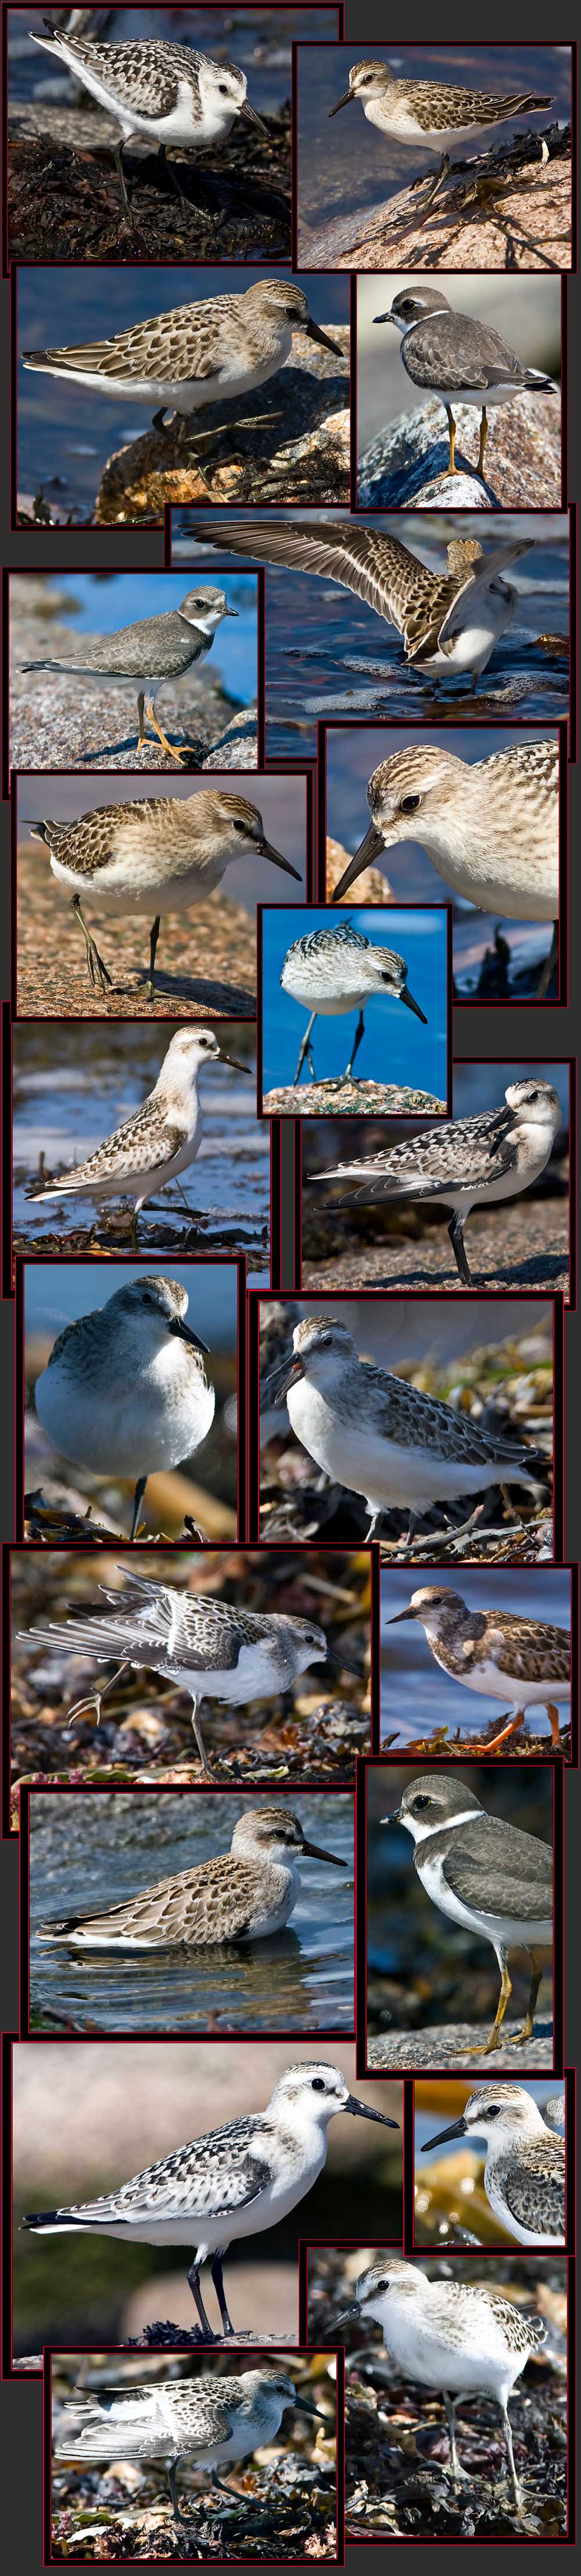 Shorebirds - Petit Manan Island - Maine Coastal Islands National Wildlife Refuge